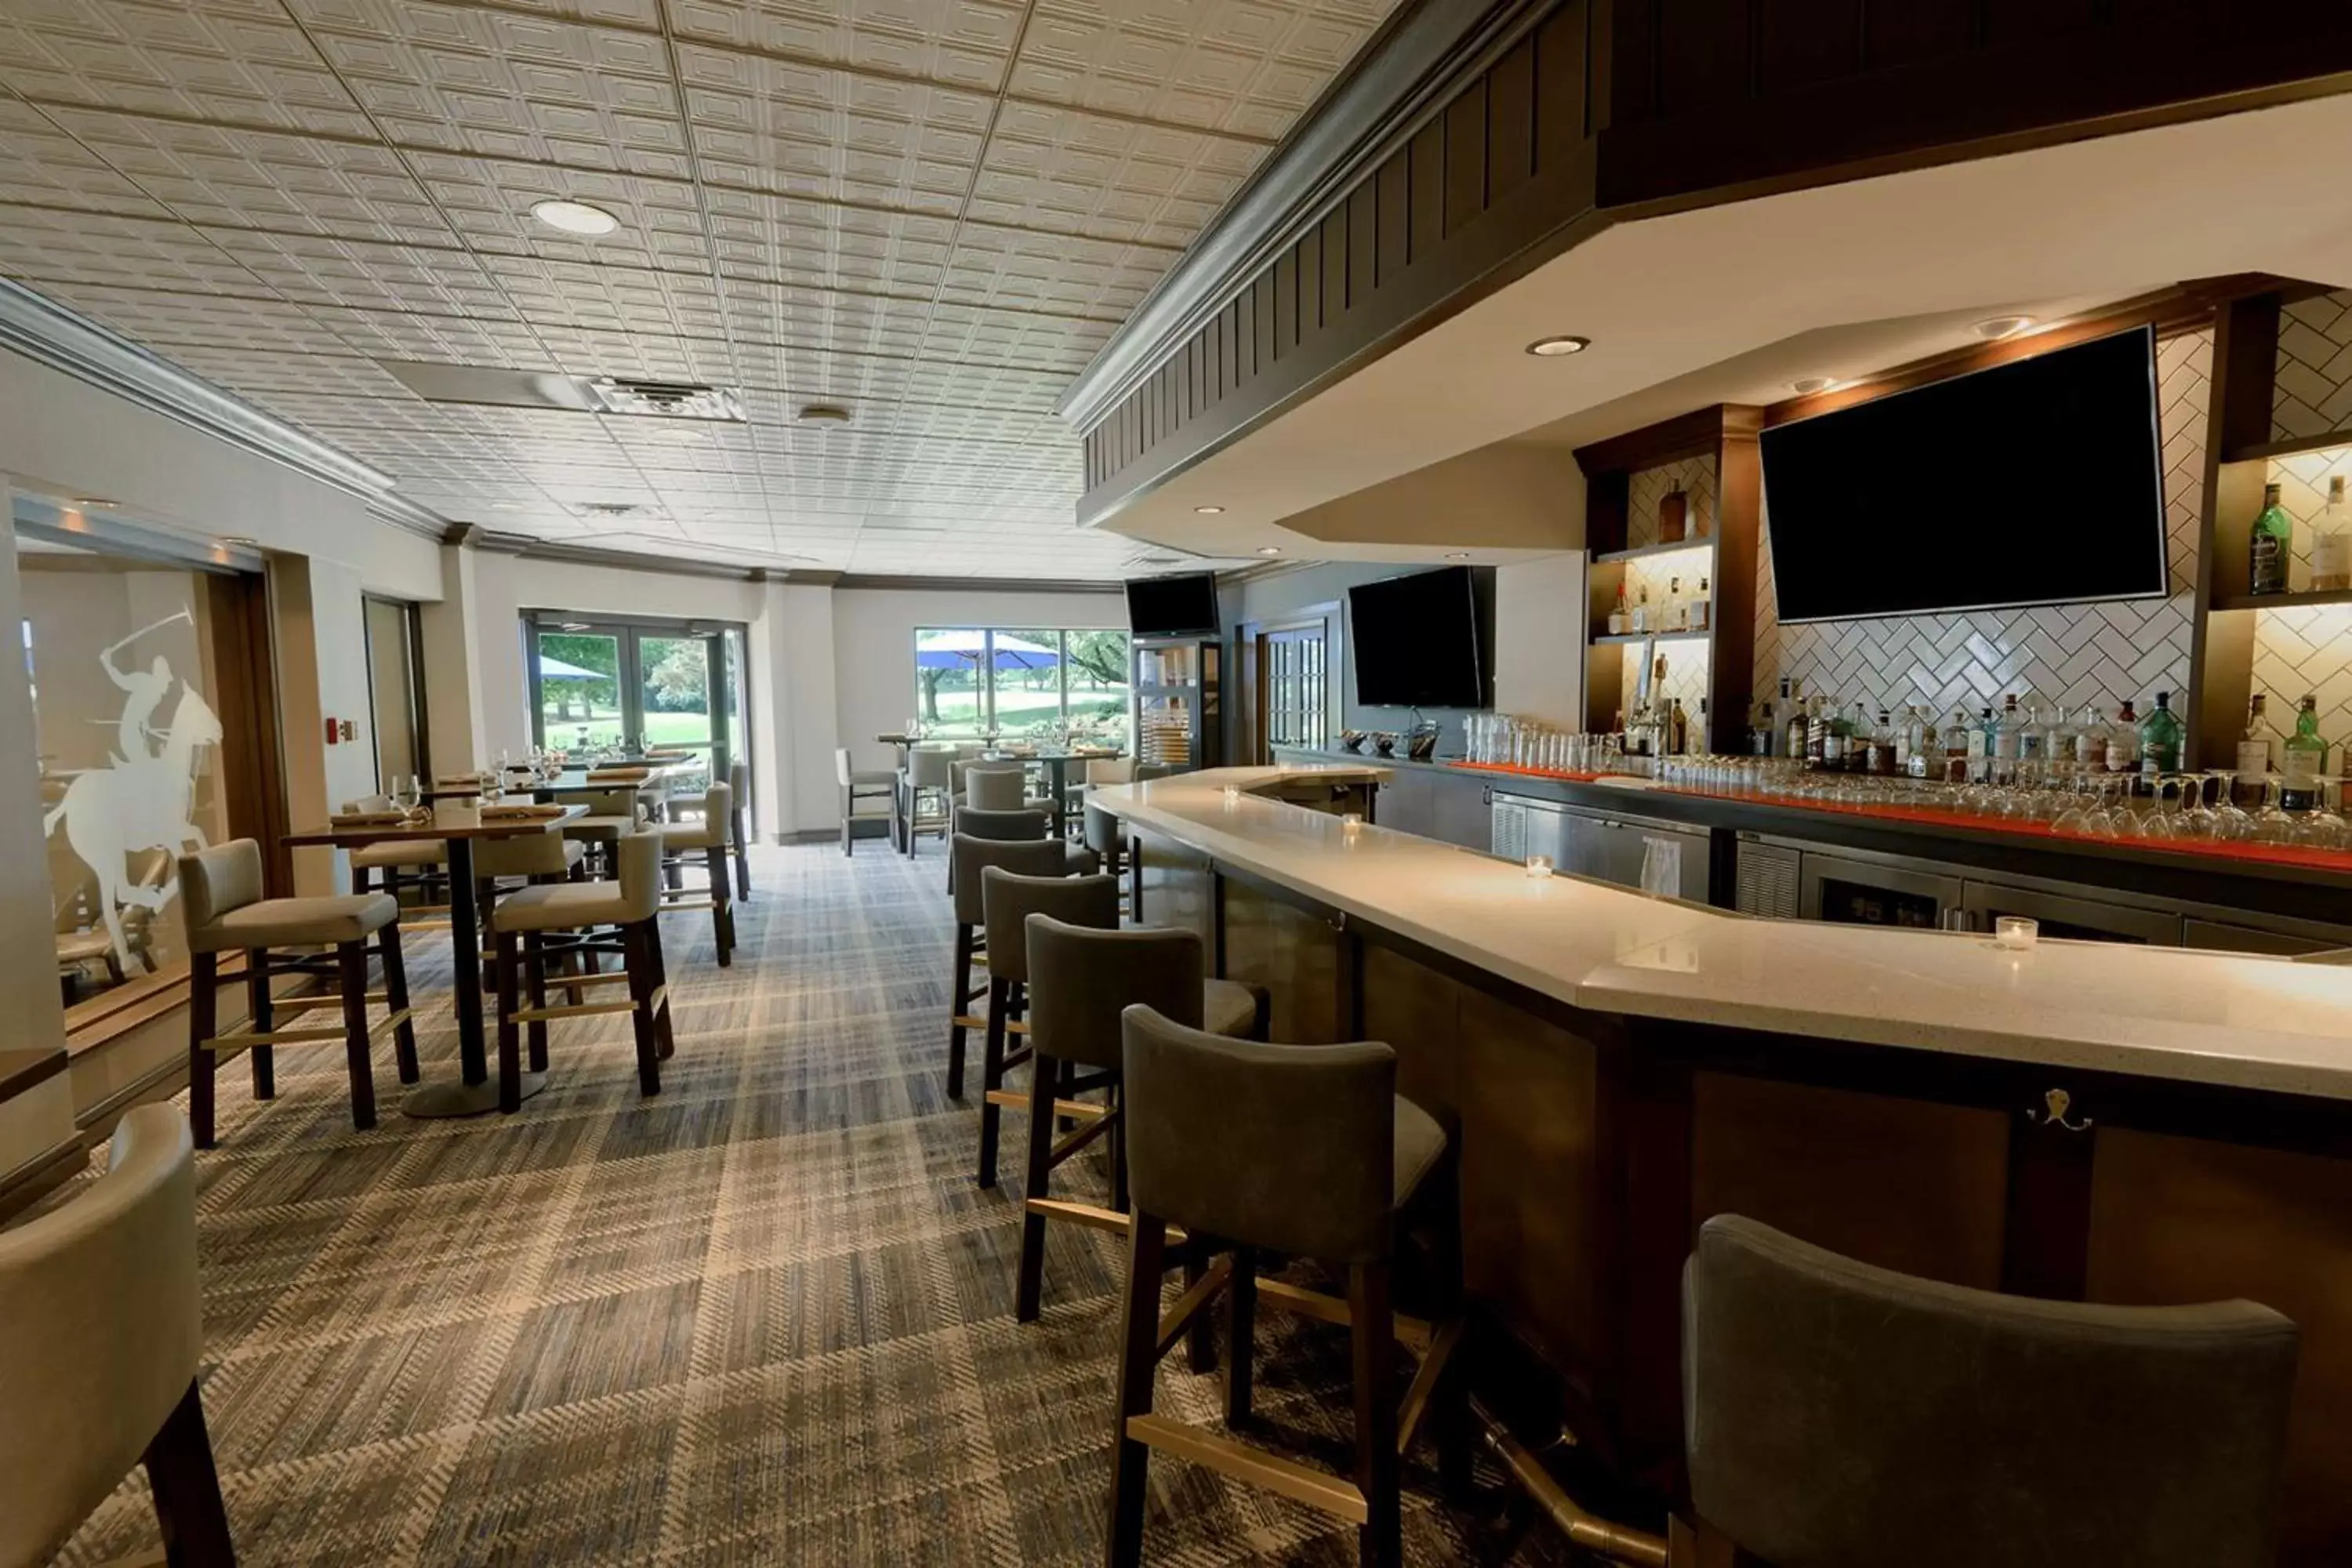 Lounge or bar, Lounge/Bar in Hilton Chicago Oak Brook Hills Resort & Conference Center